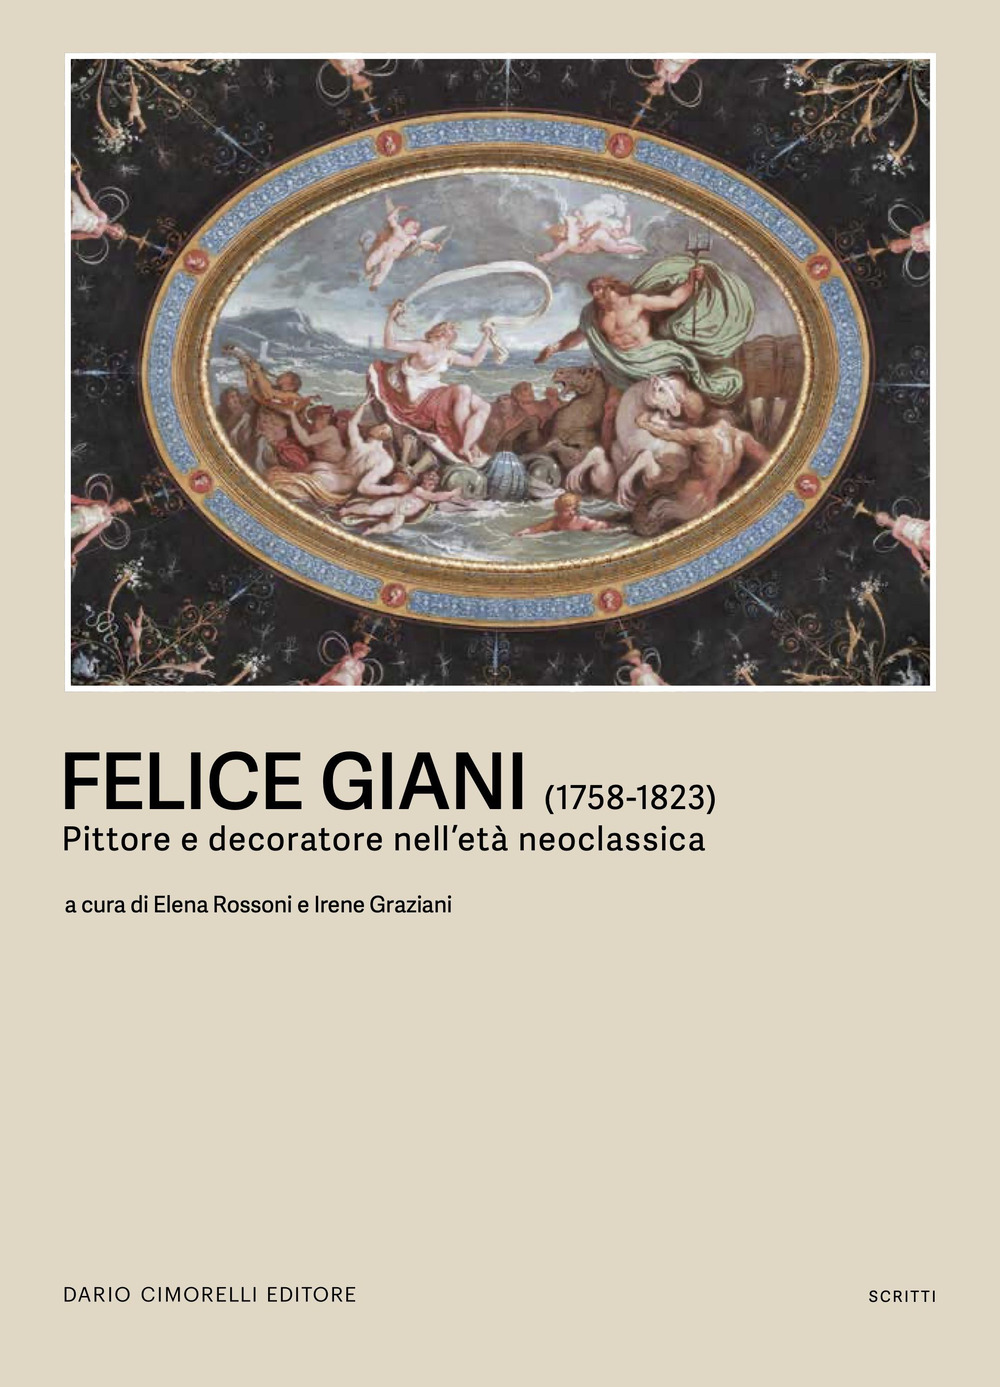 Felice Giani (1758-1823). Pittore e decoratore nell'età neoclassica